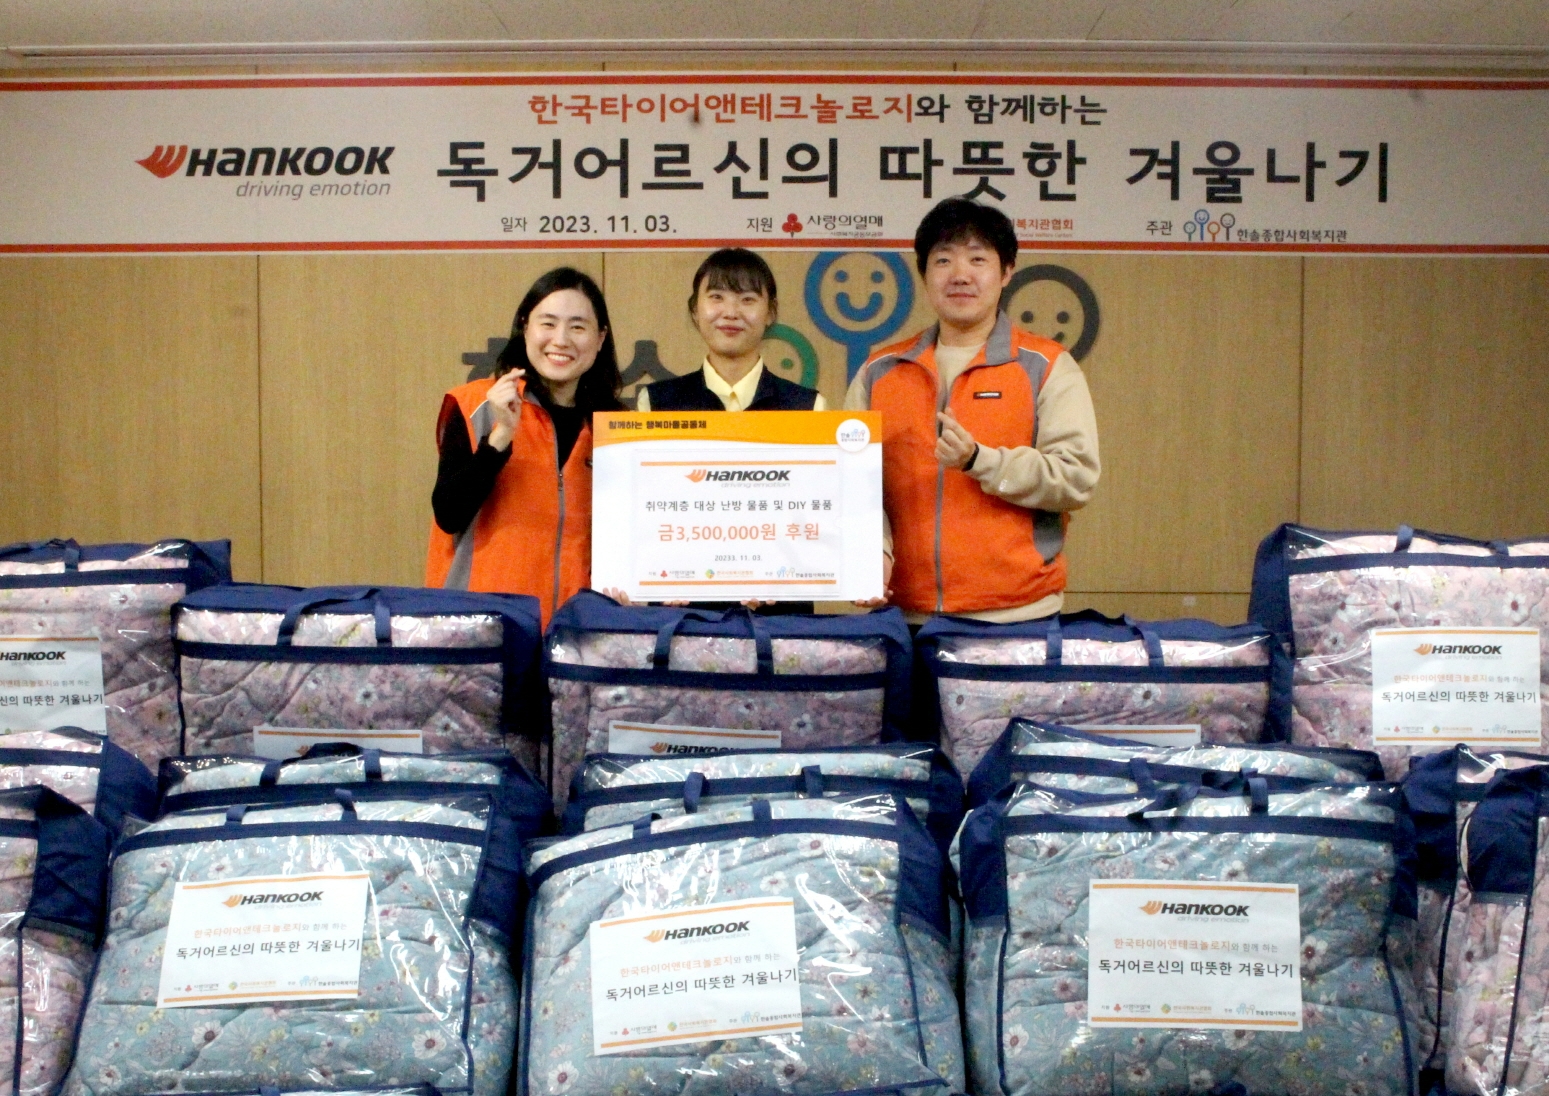 지난 11월 3일, 한국타이어 임직원들이 경기도 성남시 한솔종합사회복지관에 난방용품을 전달하고 기념사진을 촬영하고 있다.(사진=한국타이어)